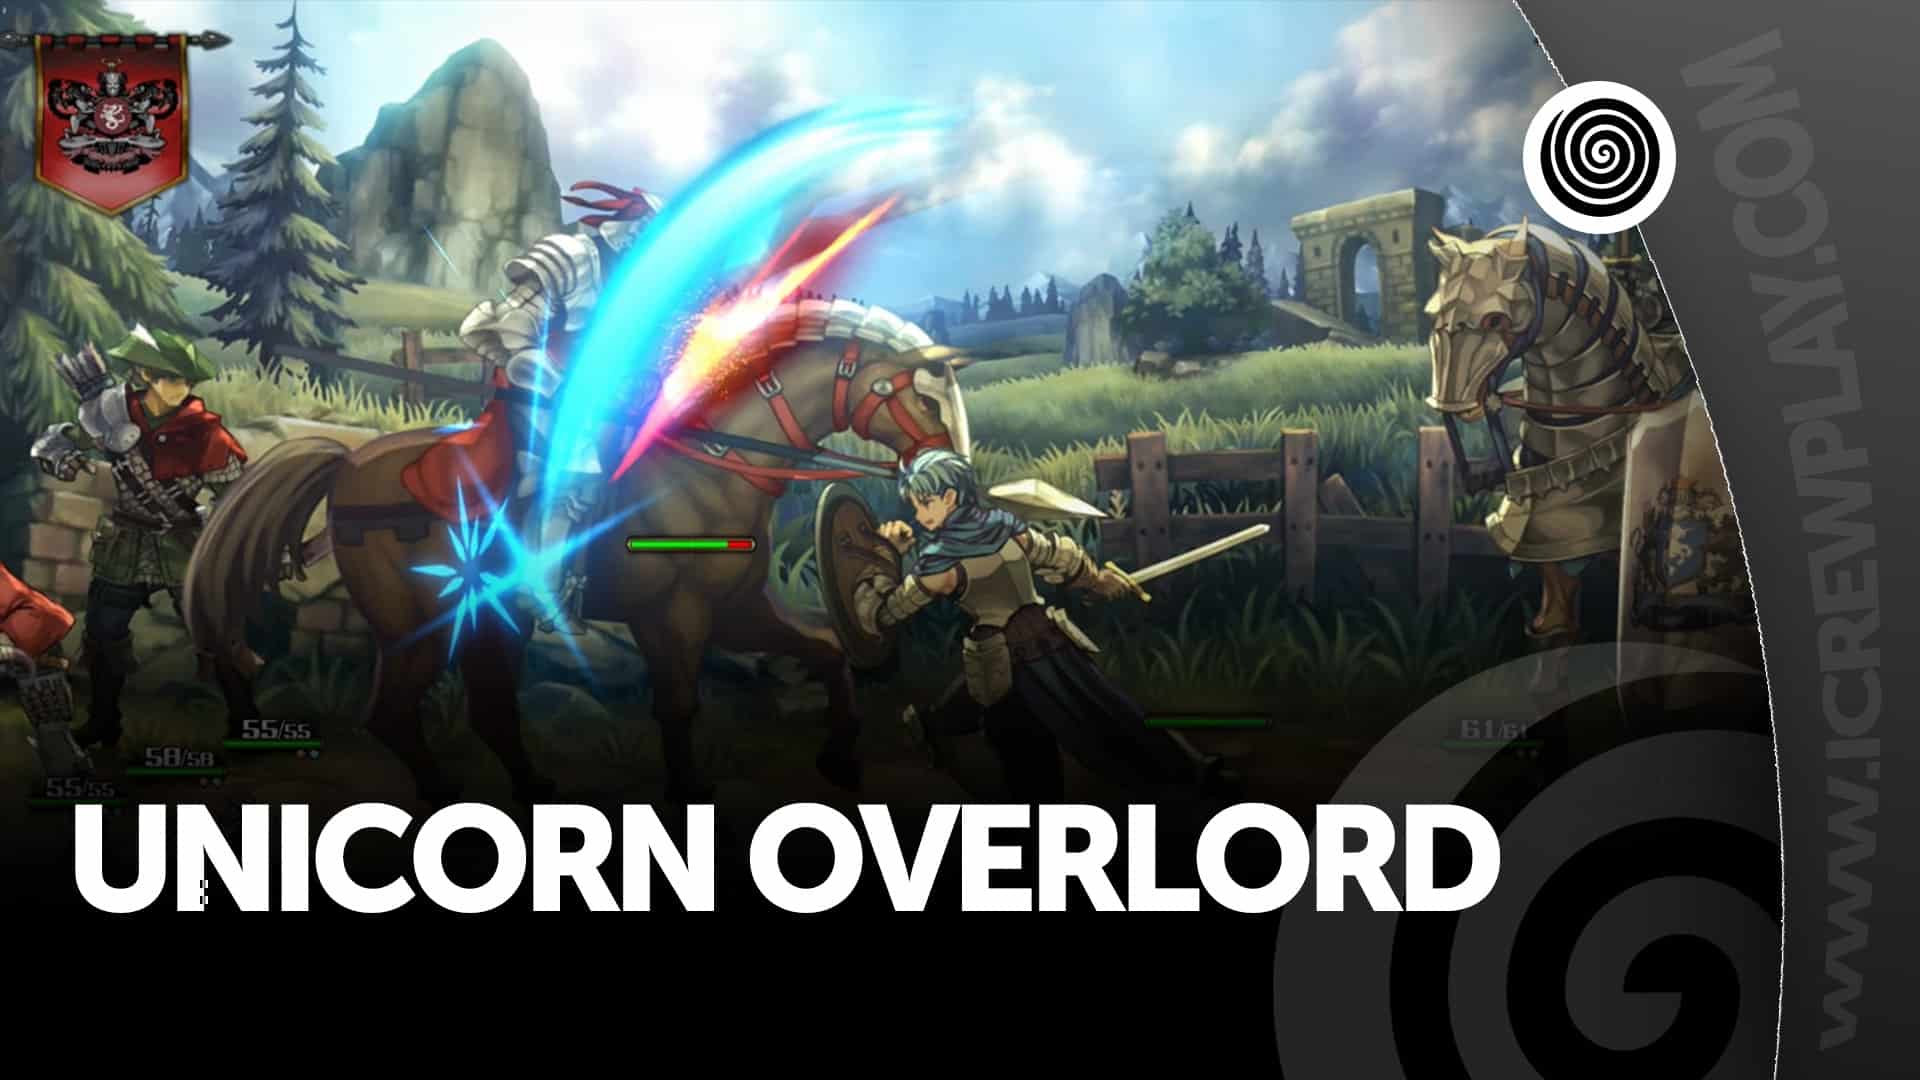 Unicorn Overlord Recensione